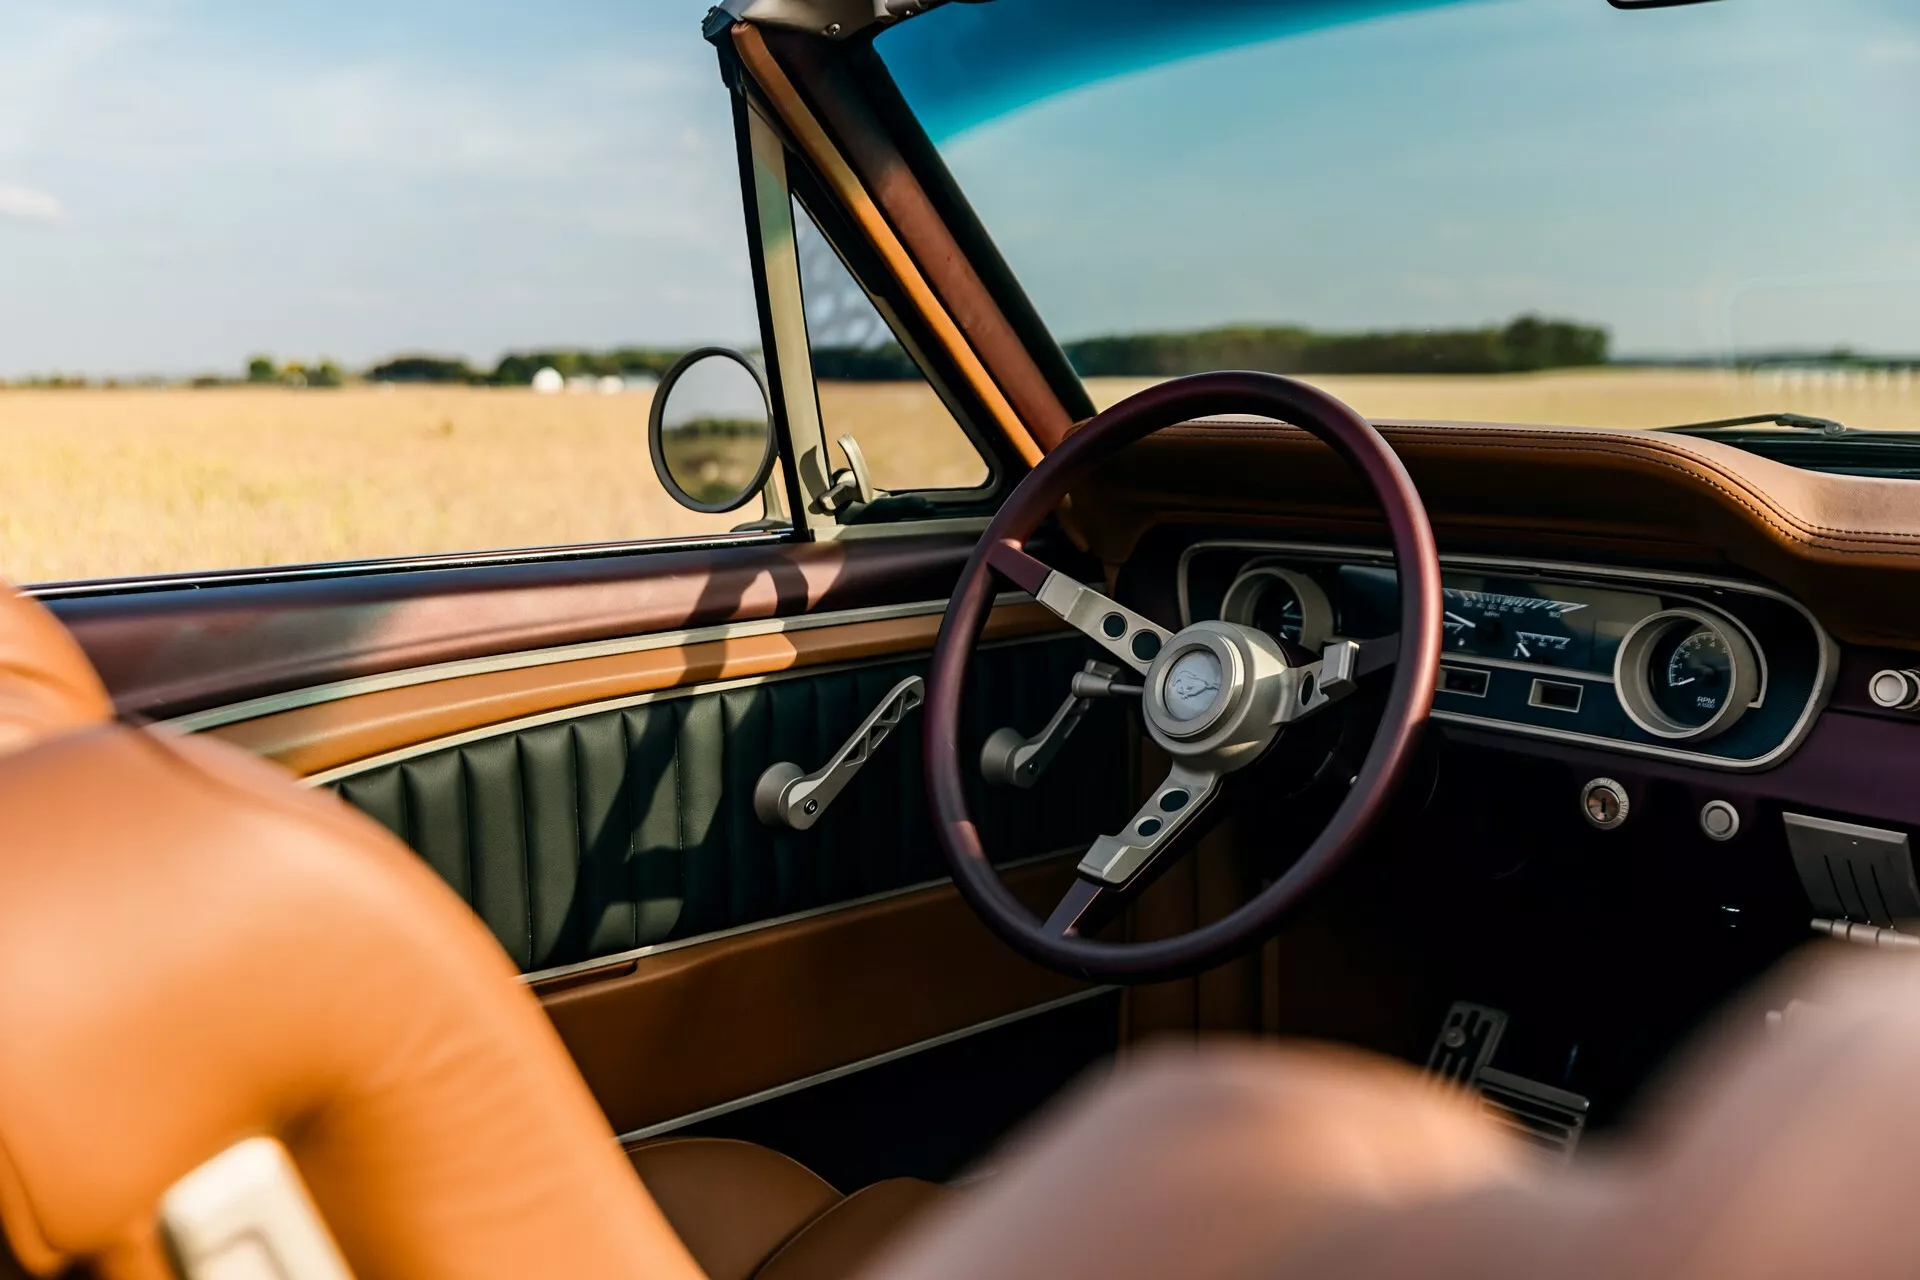 تدشين واحدة من أجمل سيارات فورد موستنج الكلاسيكية في معرض سيما الأمريكي بمحرك 8 سلندر عصري 26